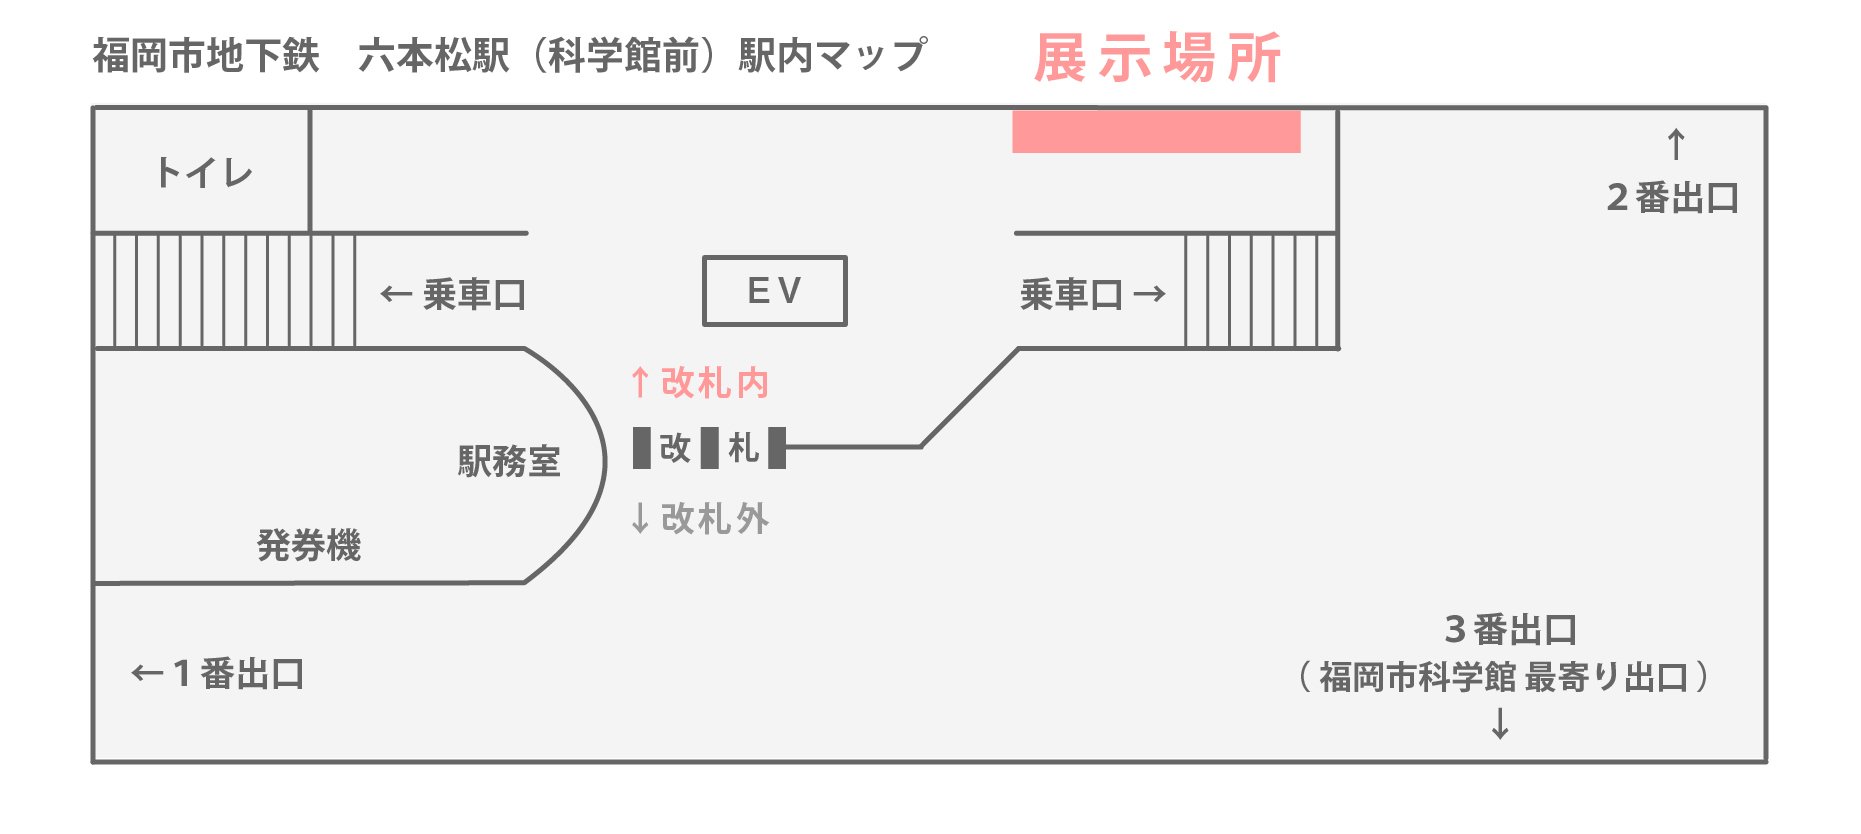 MAP 六本松駅